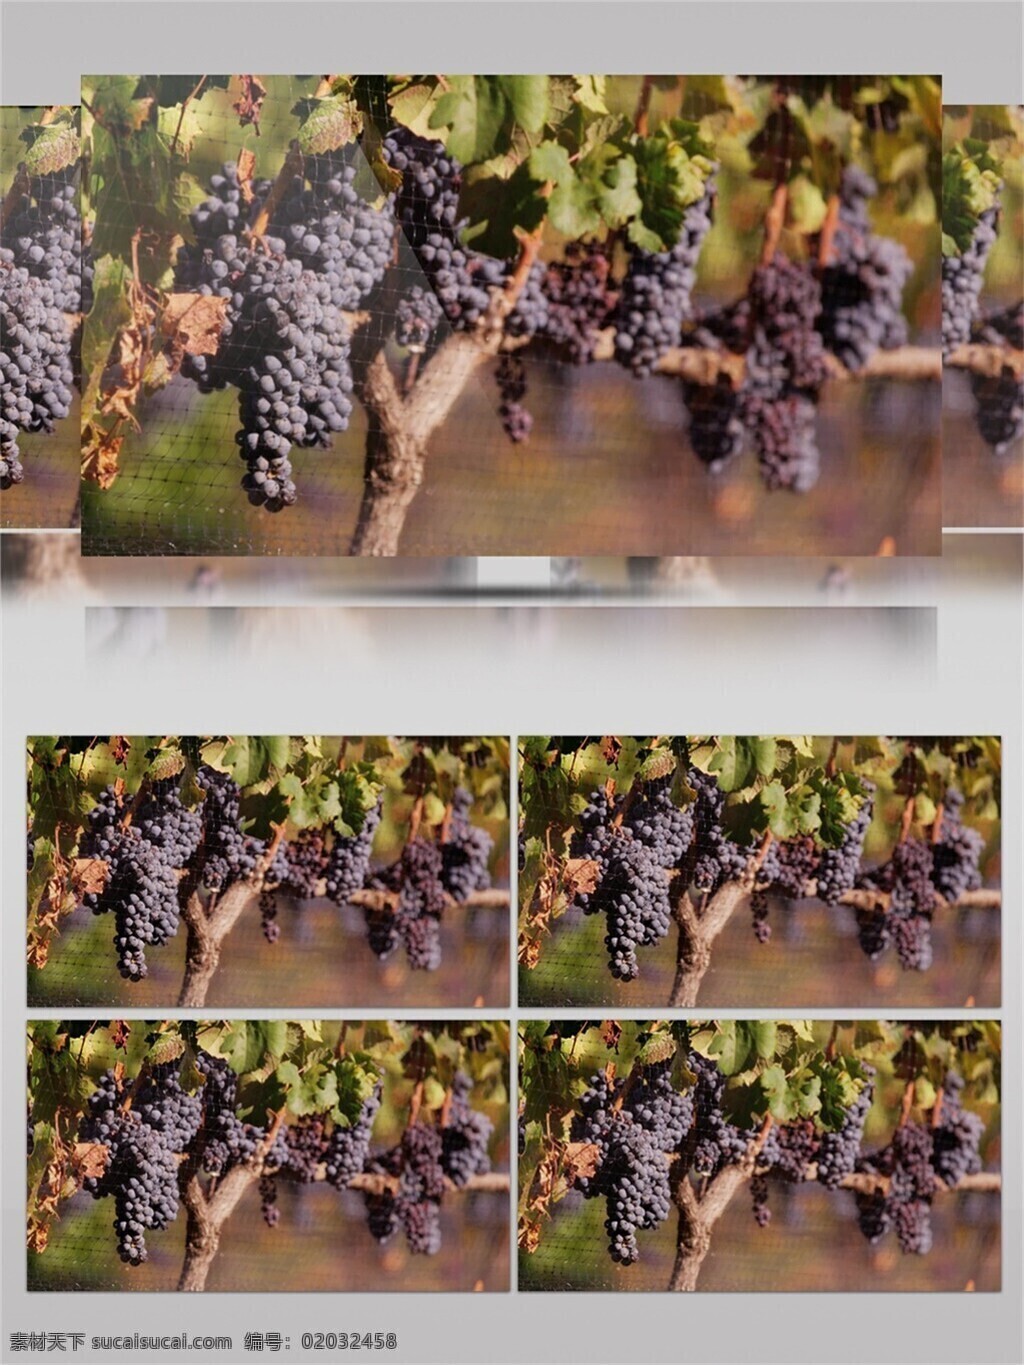 片 葡萄 基地 园 视频 音效 美味 紫色 葡萄基地 丰收 采摘 视频音效 葡萄丰收 葡萄种植 葡萄特写